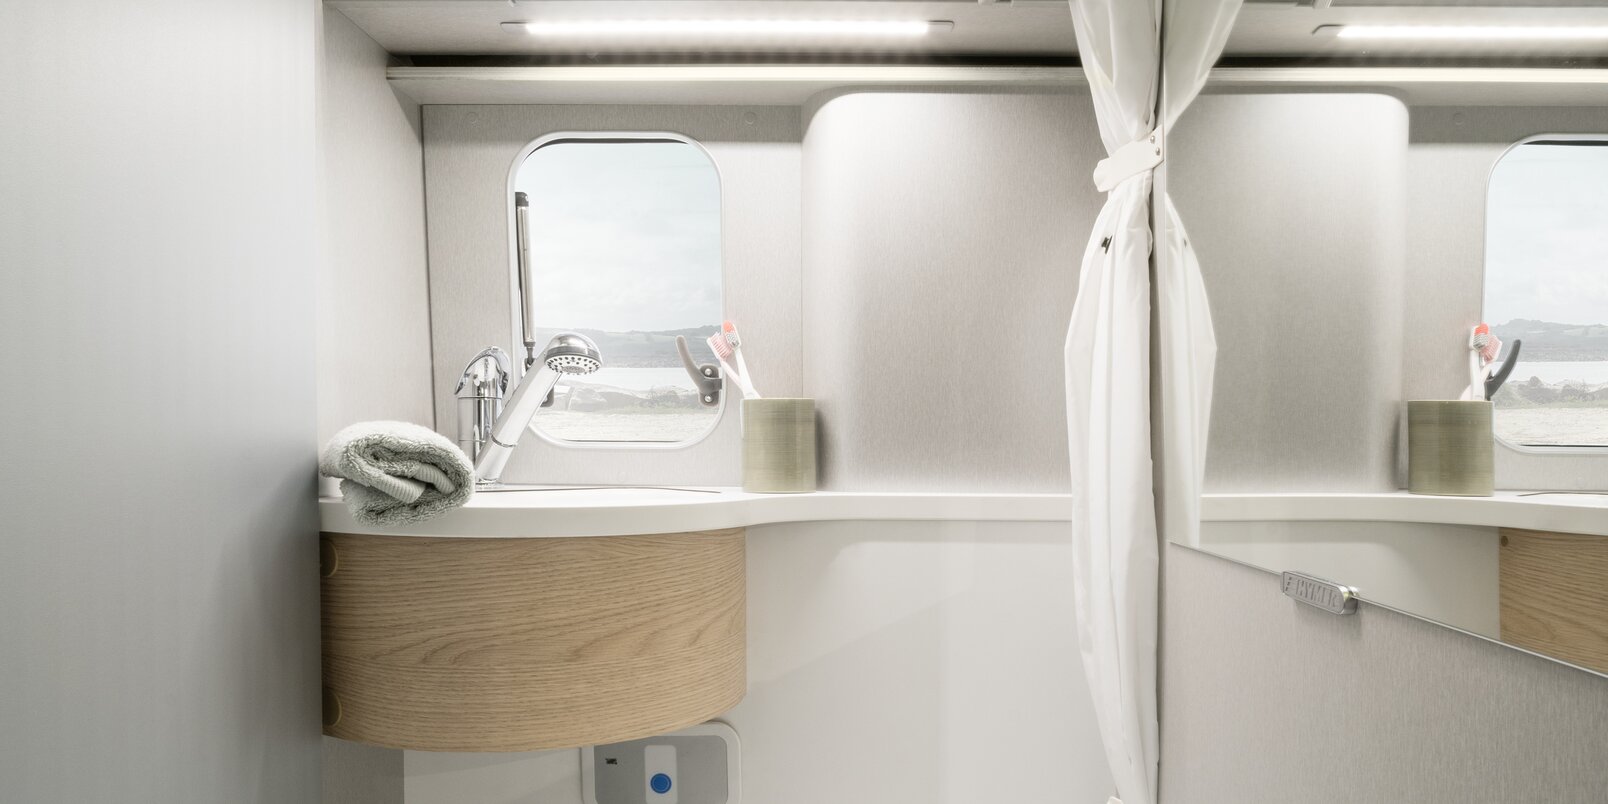 Toilette, Waschbecken, offener Spiegelschrank, Duschvorhang, Ablagefach und Fenster im Kompaktbad beim HYMER Free